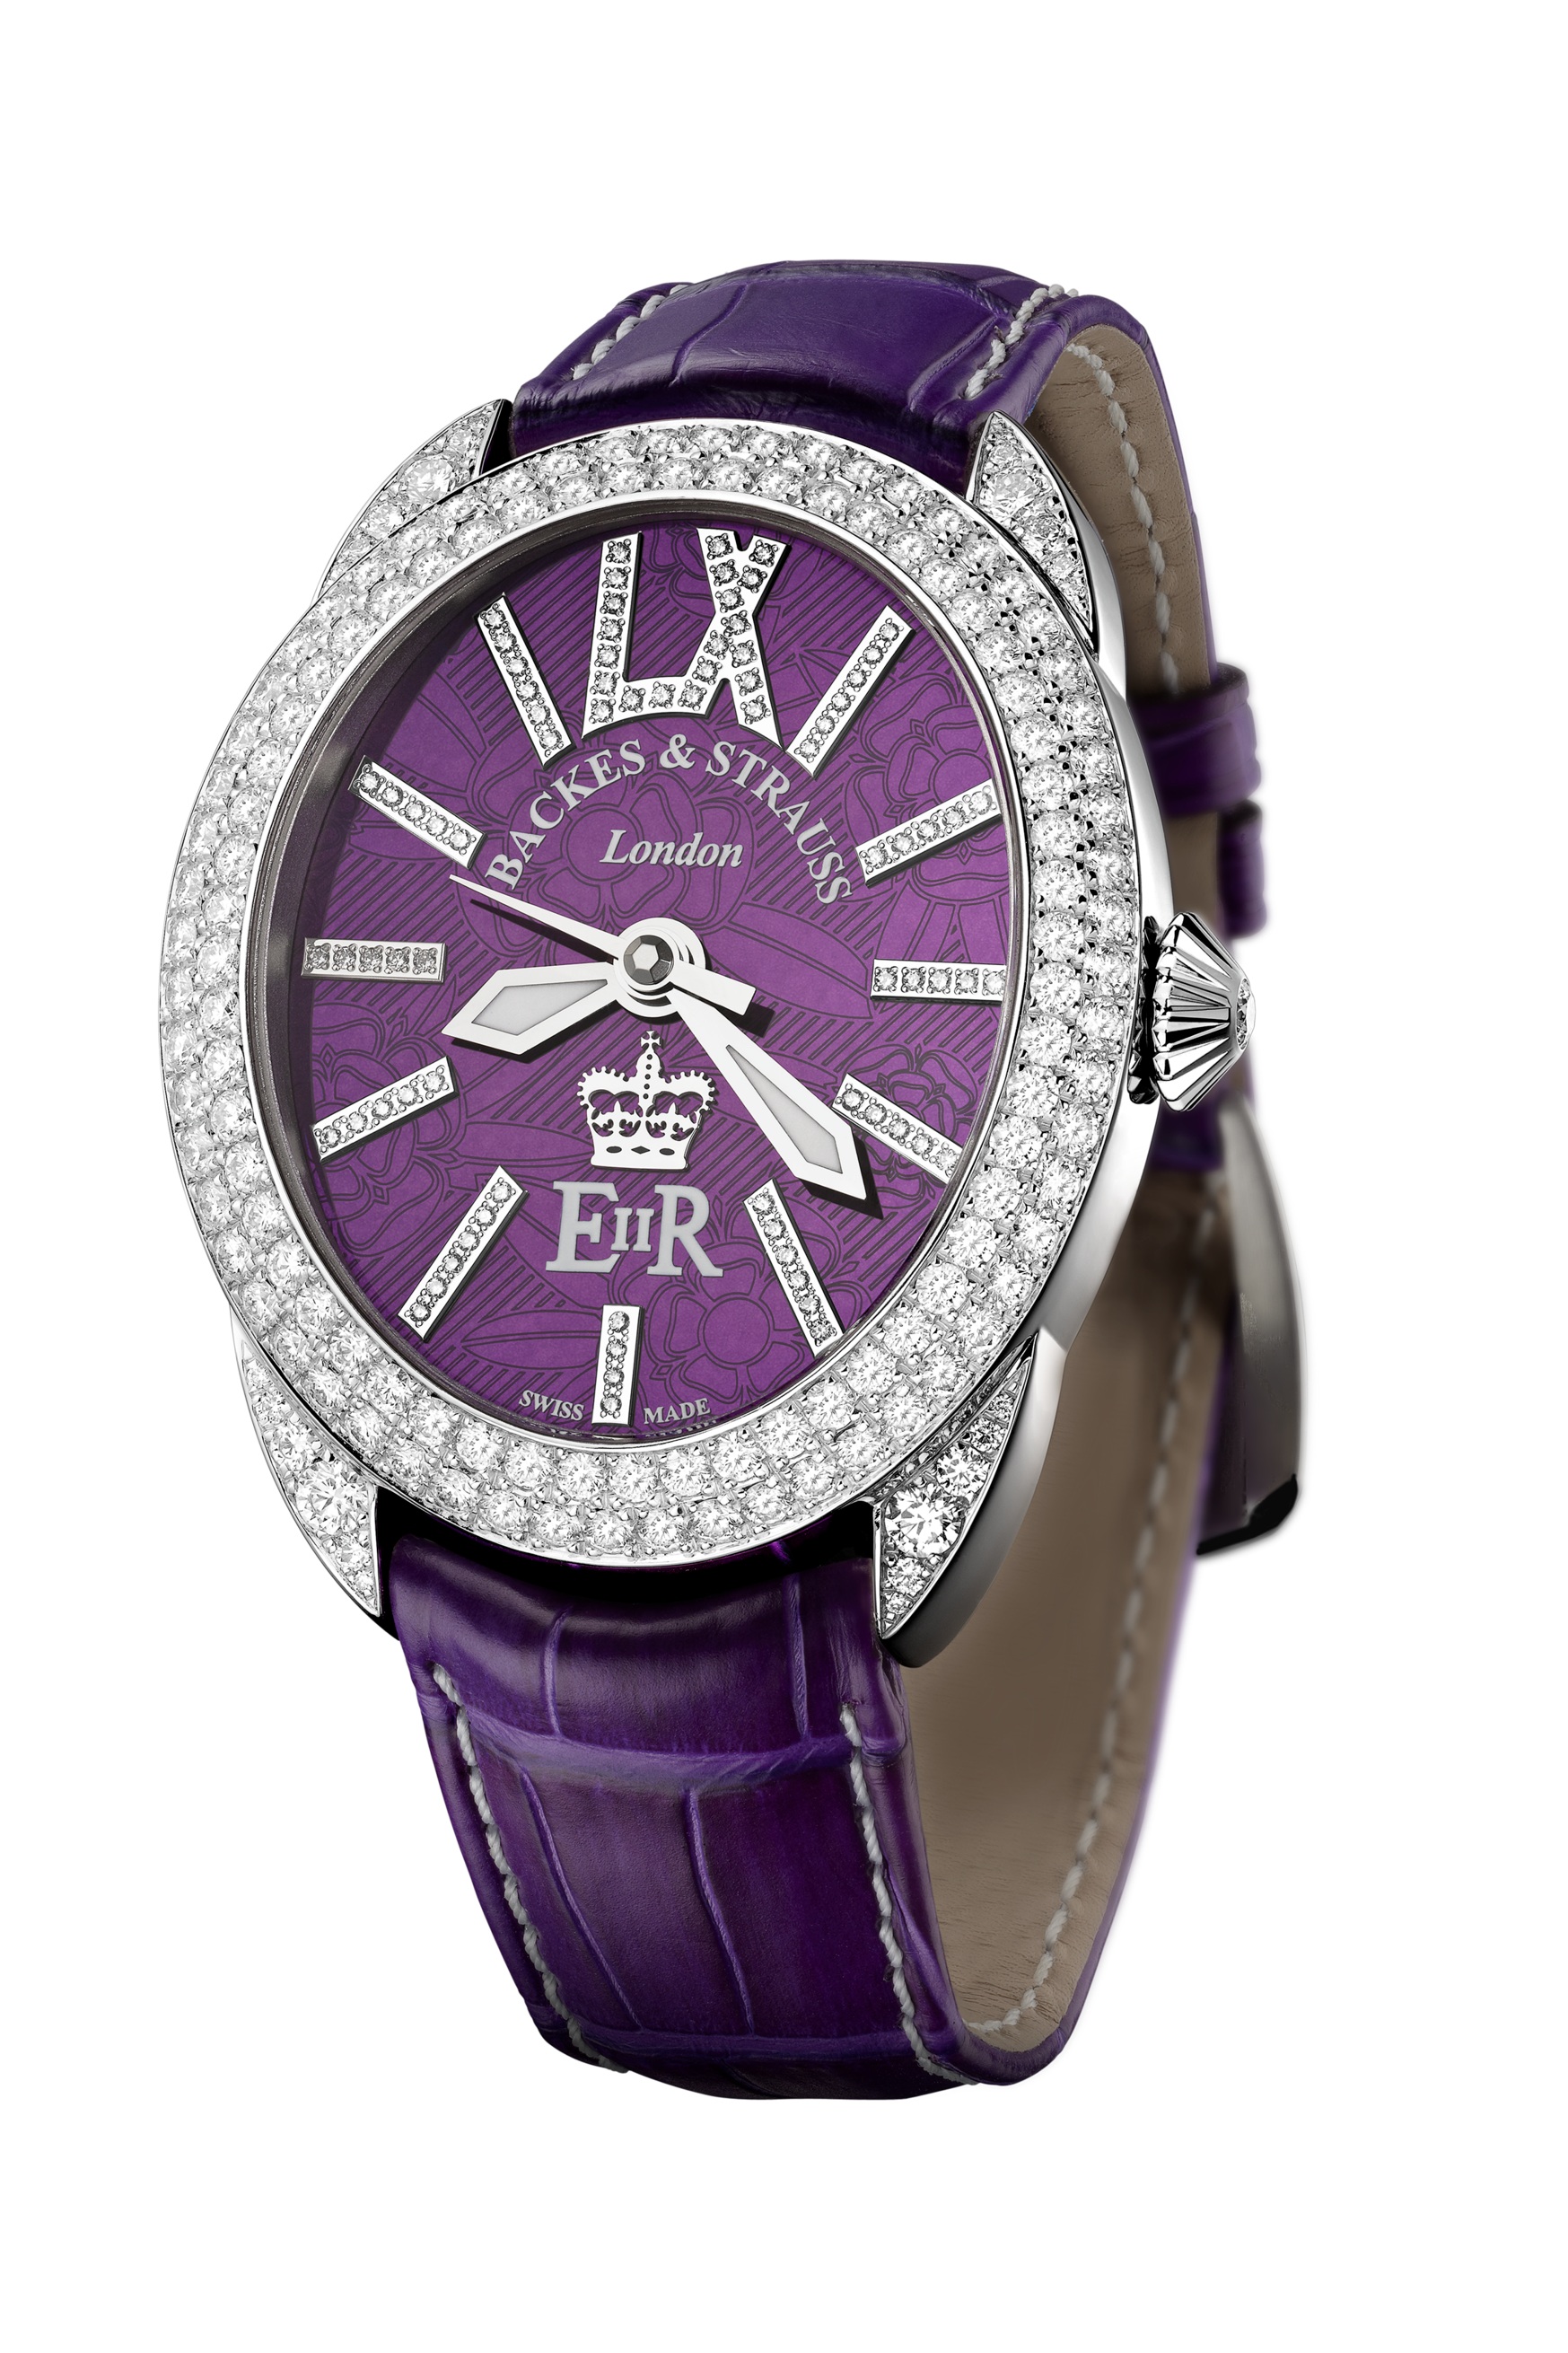 Regent Diamond Jubilee 4047 limited edition watch side-shot